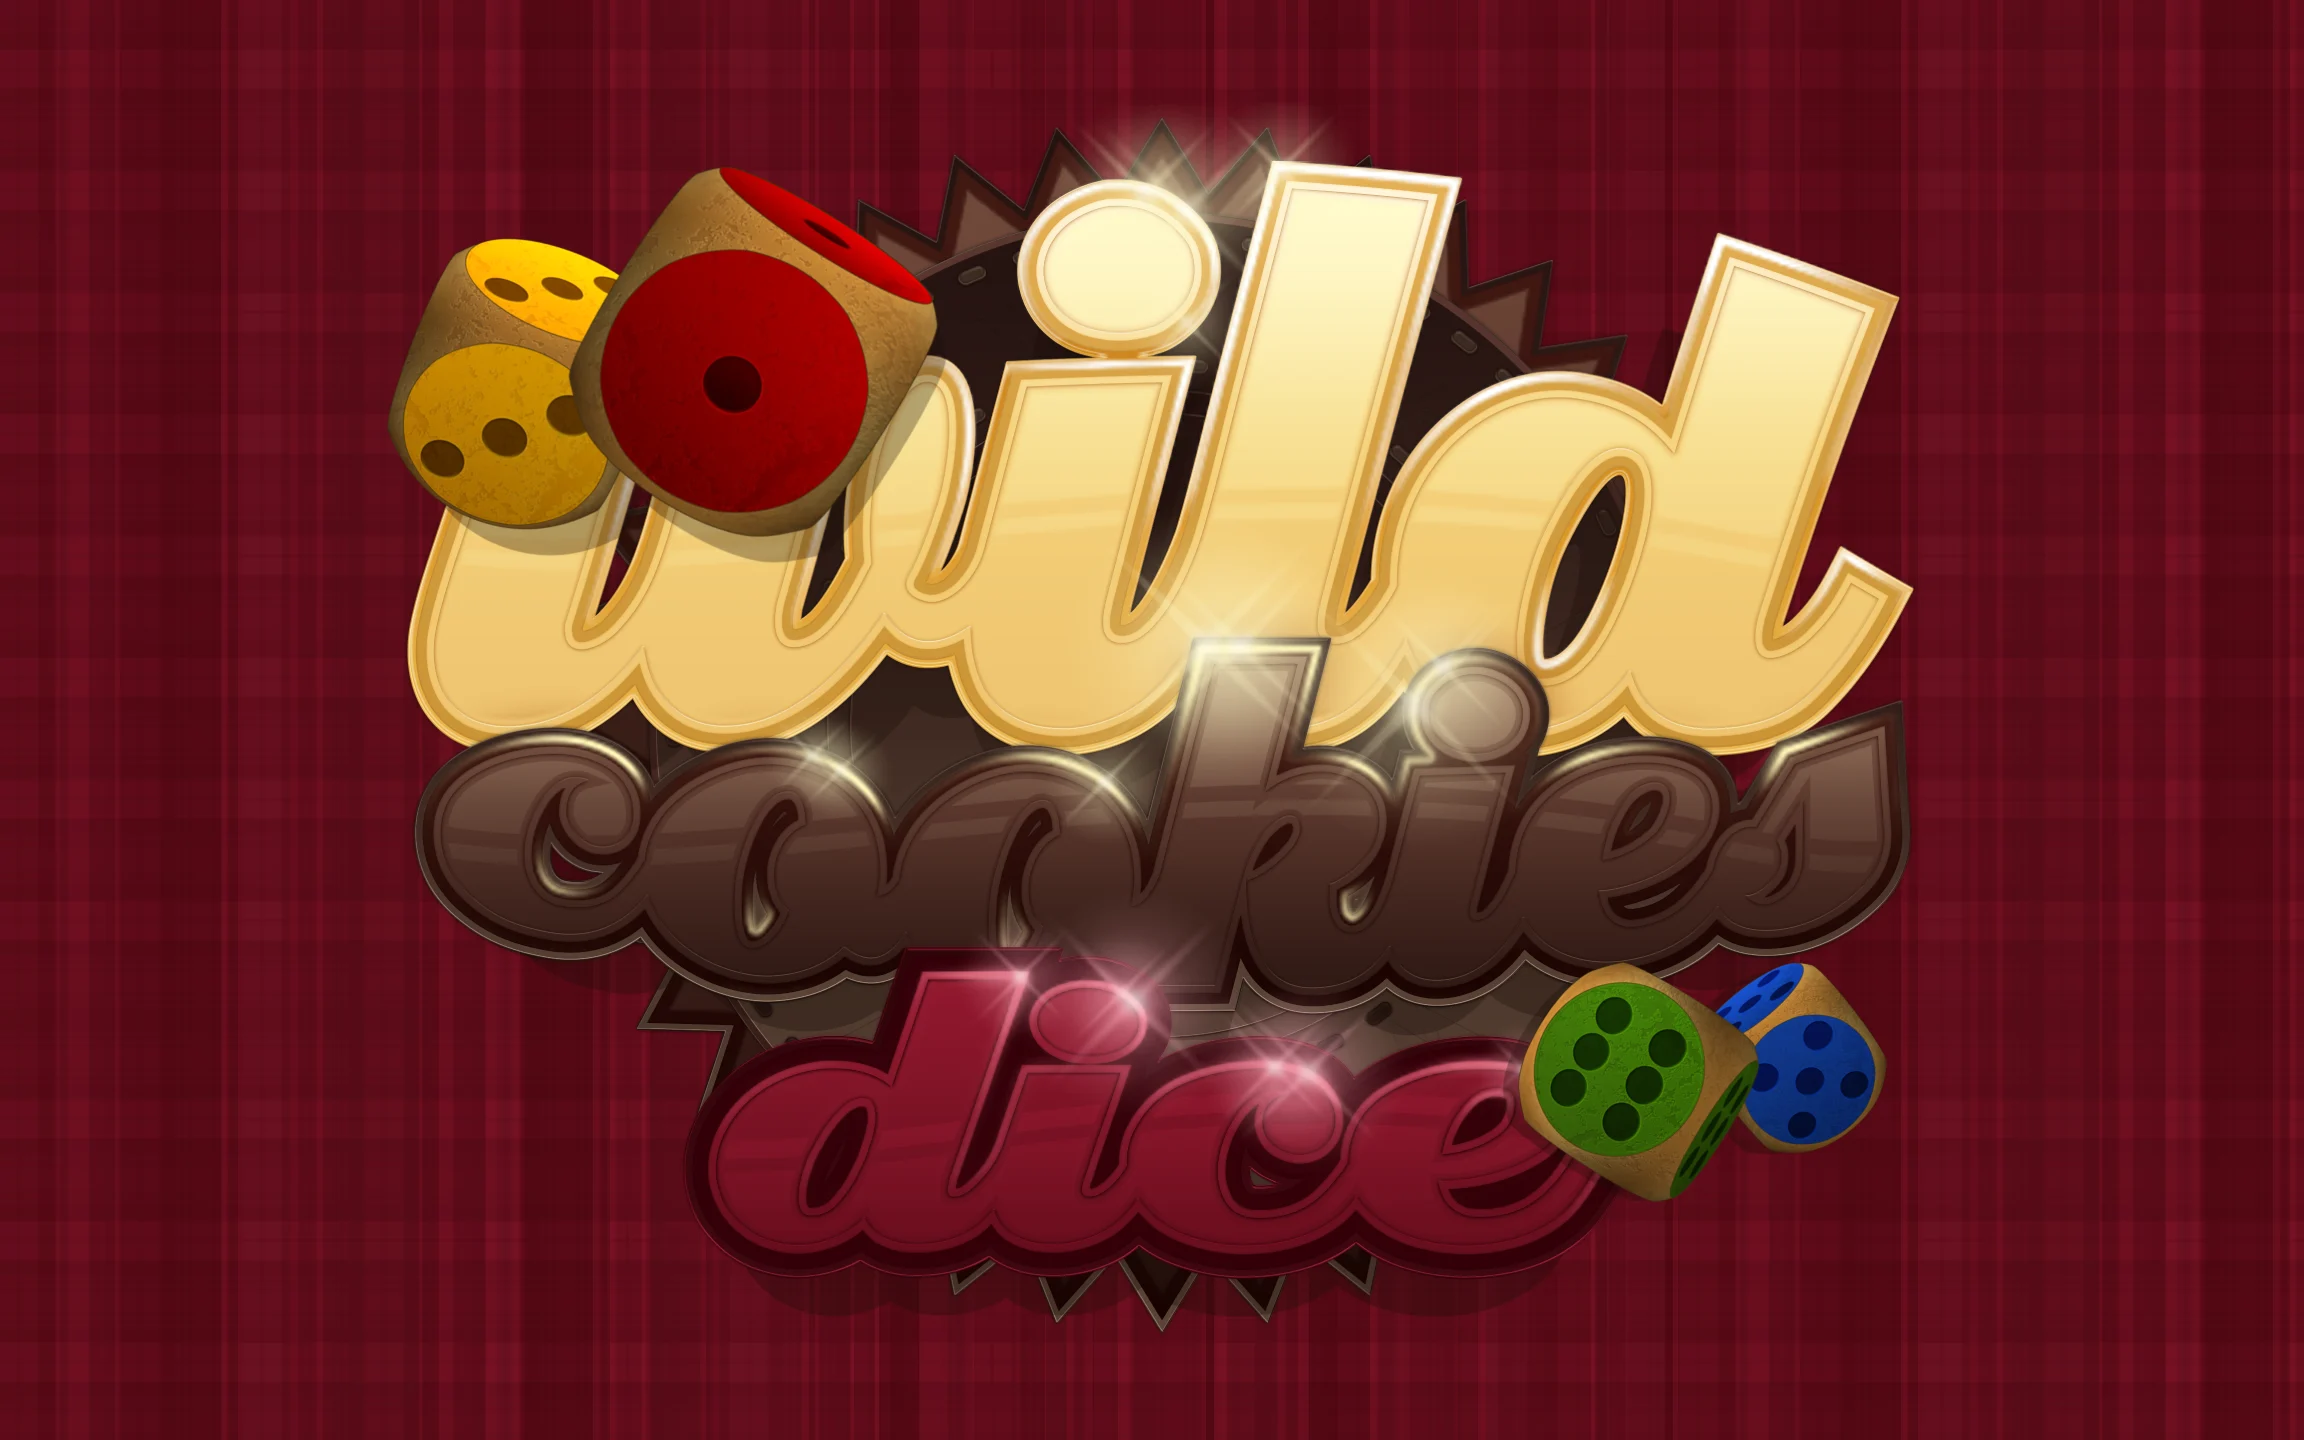 Speel Wild Cookies Dice op Starcasino.be online casino